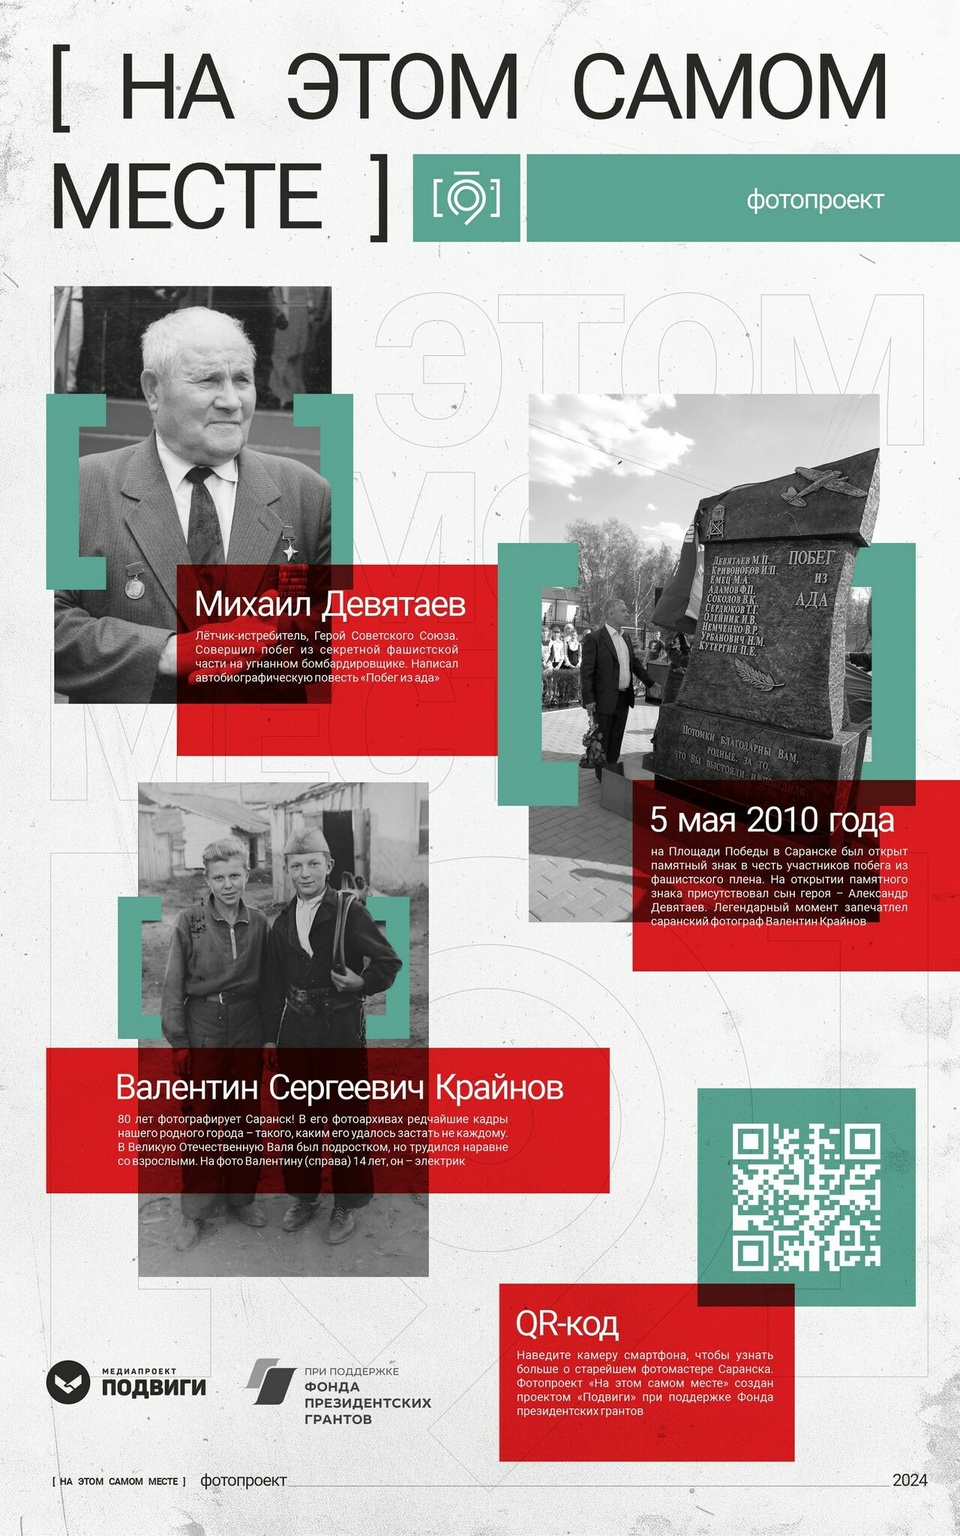 В 2000 году в Саранск приезжал Михаил Девятаев. В 2010 году сын покойного героя открывал в Саранске памятник "Побег из ада". Оба момента запечатлел фотограф Крайнов